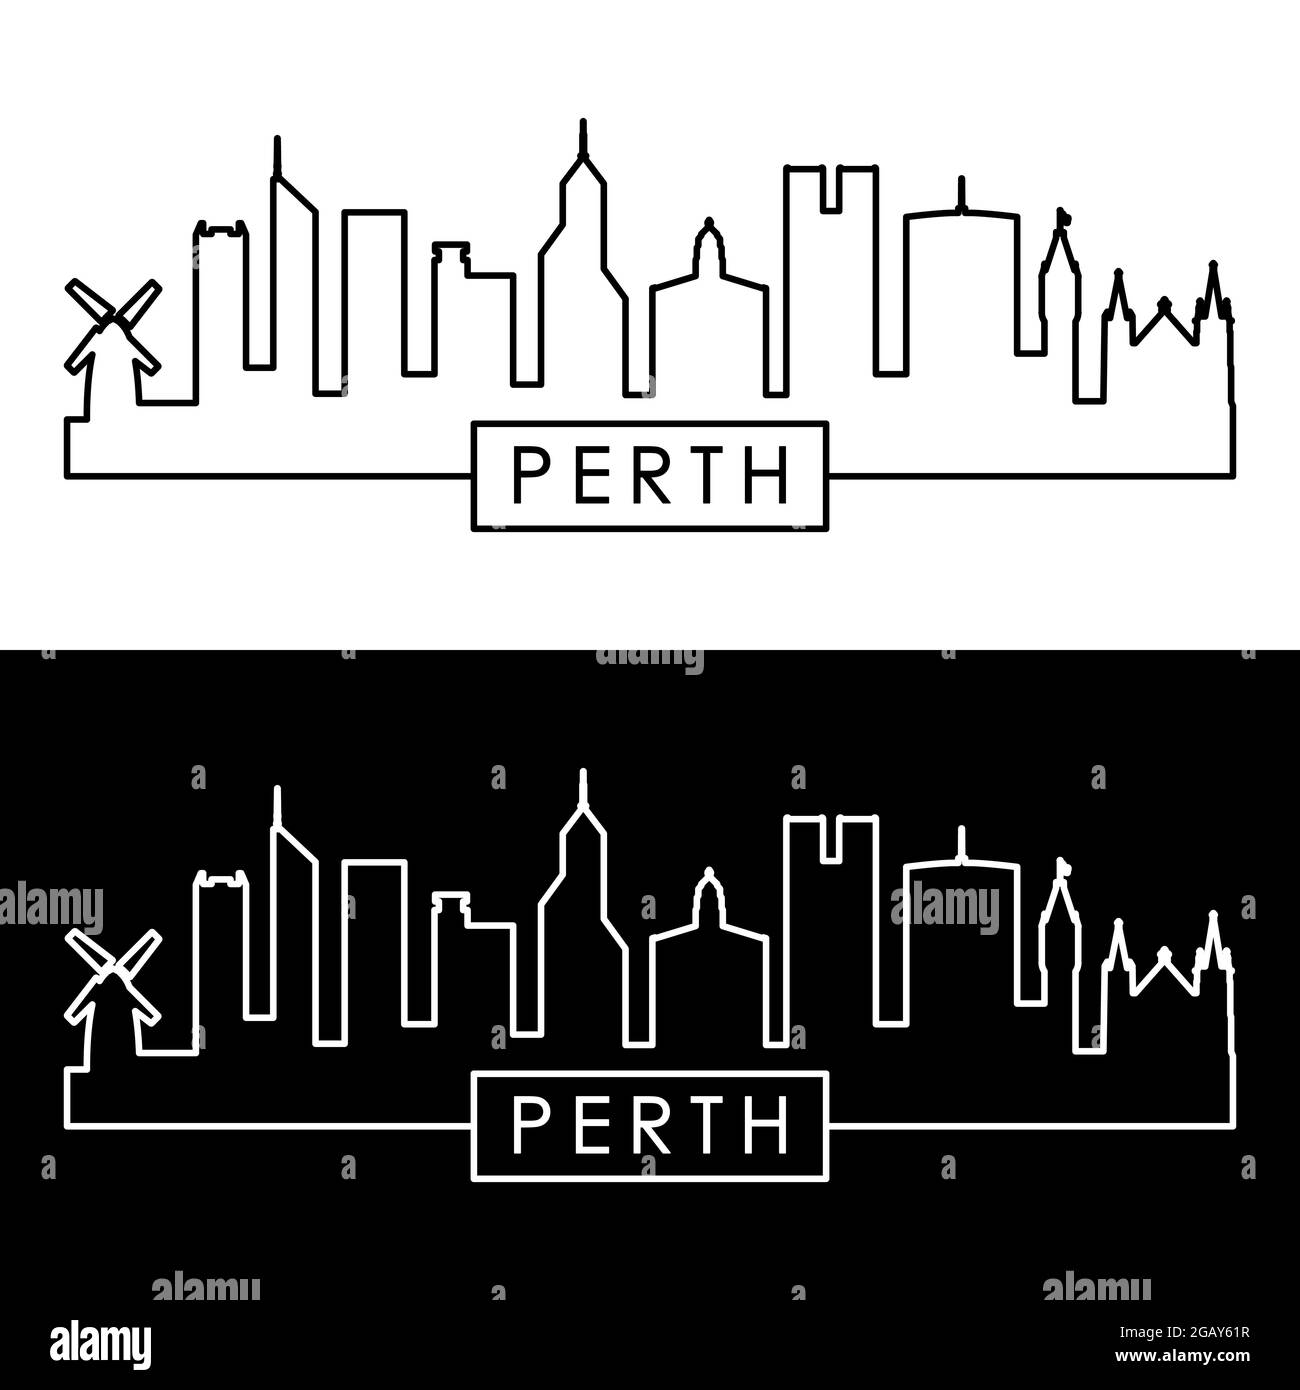 Perth skyline. Linear style. Editable vector file. Stock Vector